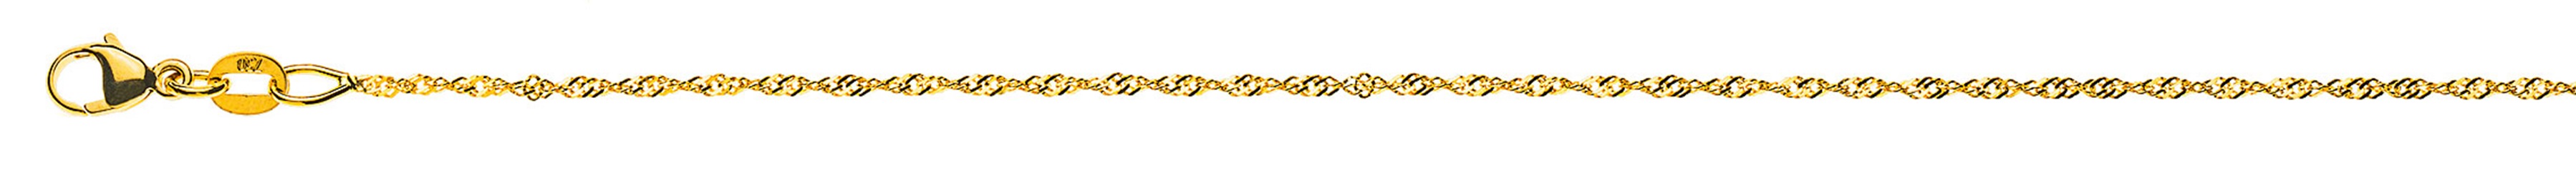 AURONOS Prestige Necklace Yellow Gold 18K Singapore Chain 60cm 1.2mm